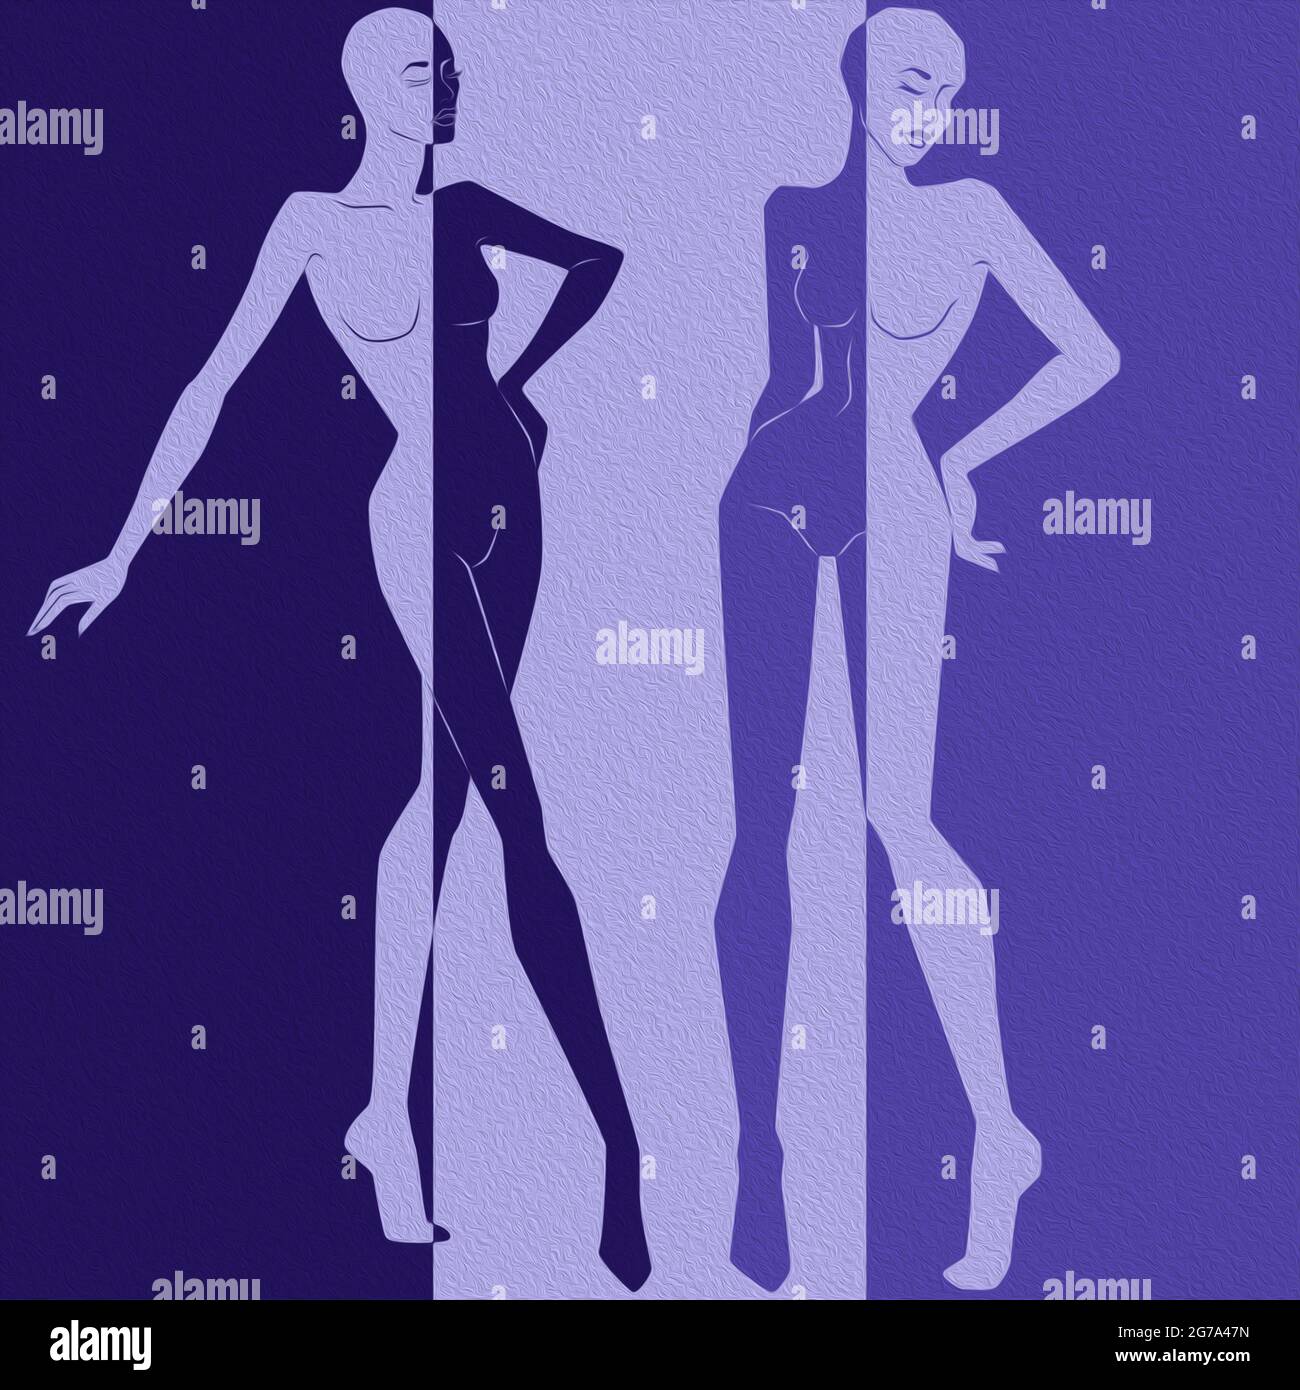 Résumé de deux femmes attirantes divisé dans un espace positif négatif, expression conceptuelle colorée Banque D'Images